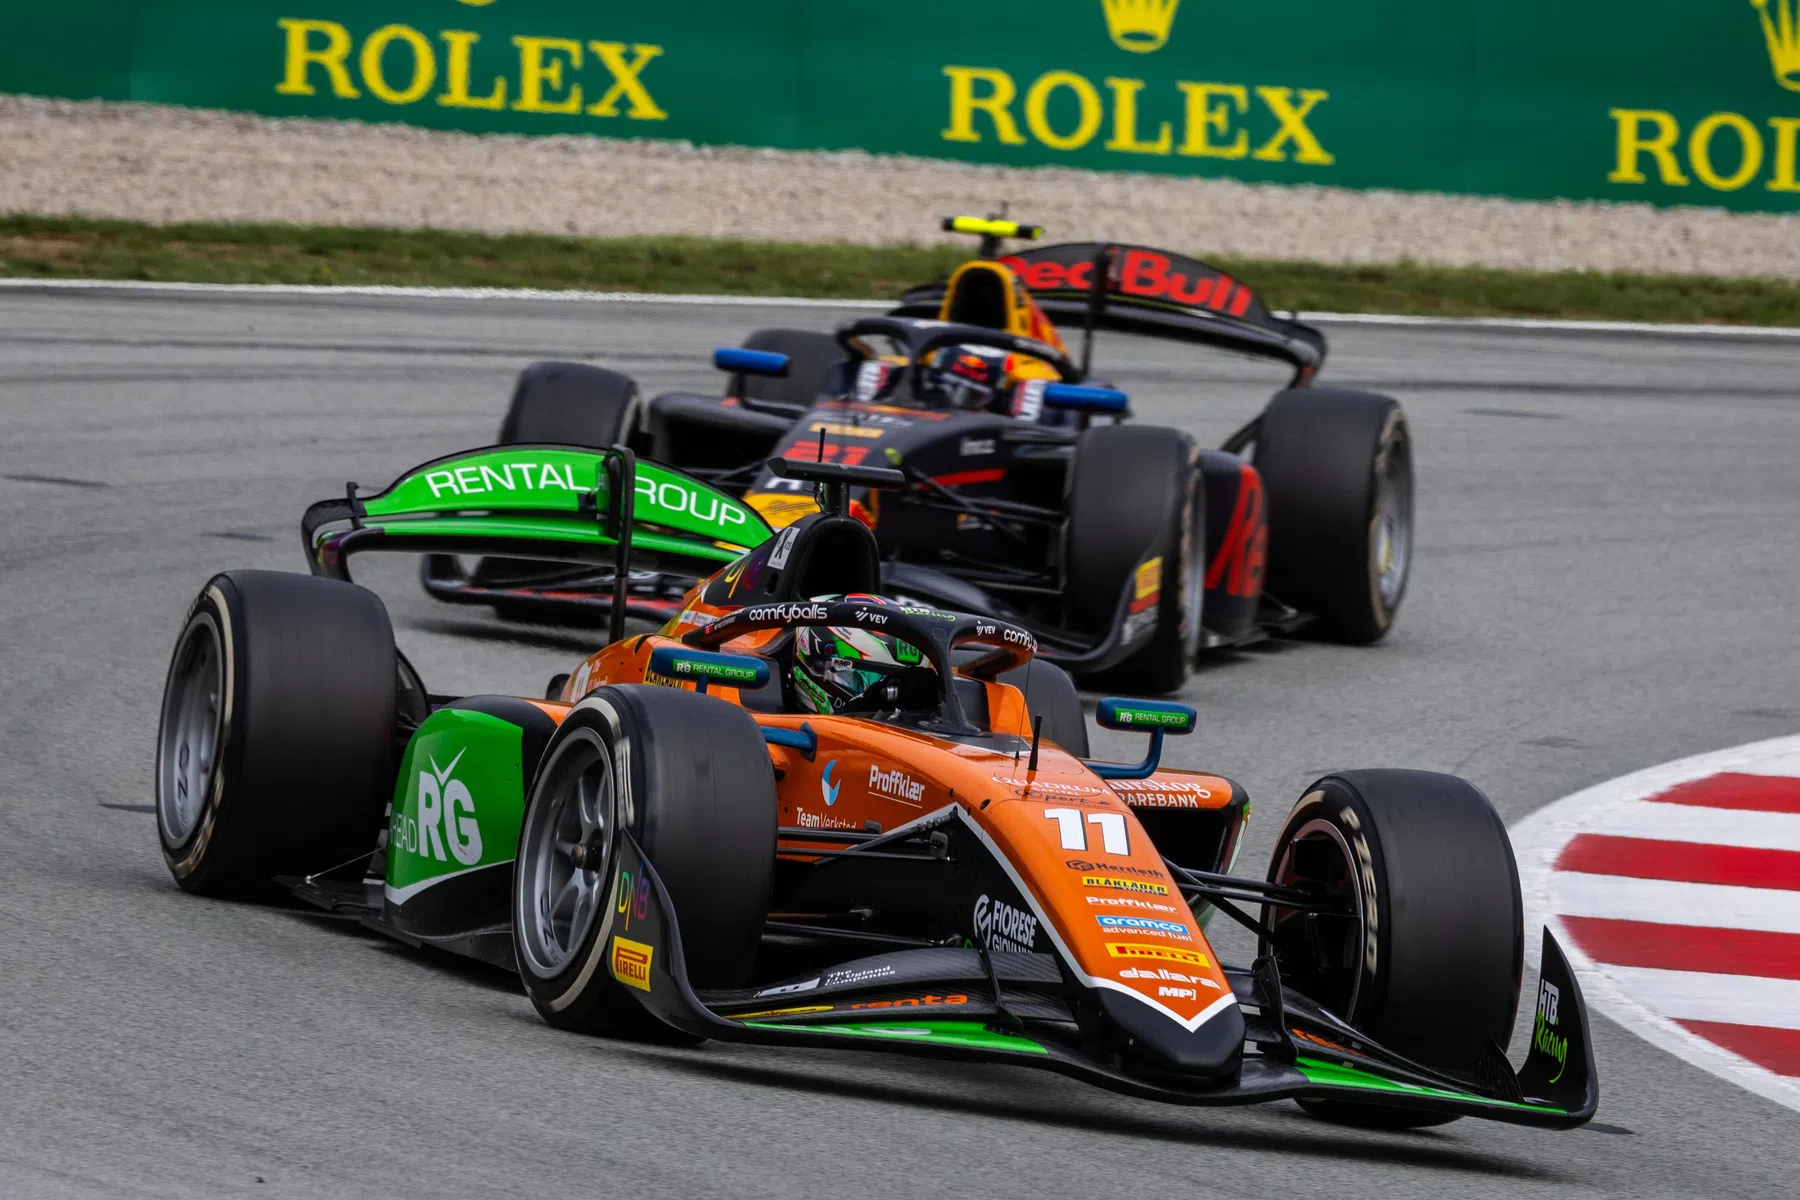 hauger pakt pole position voor race in Oostenrijk